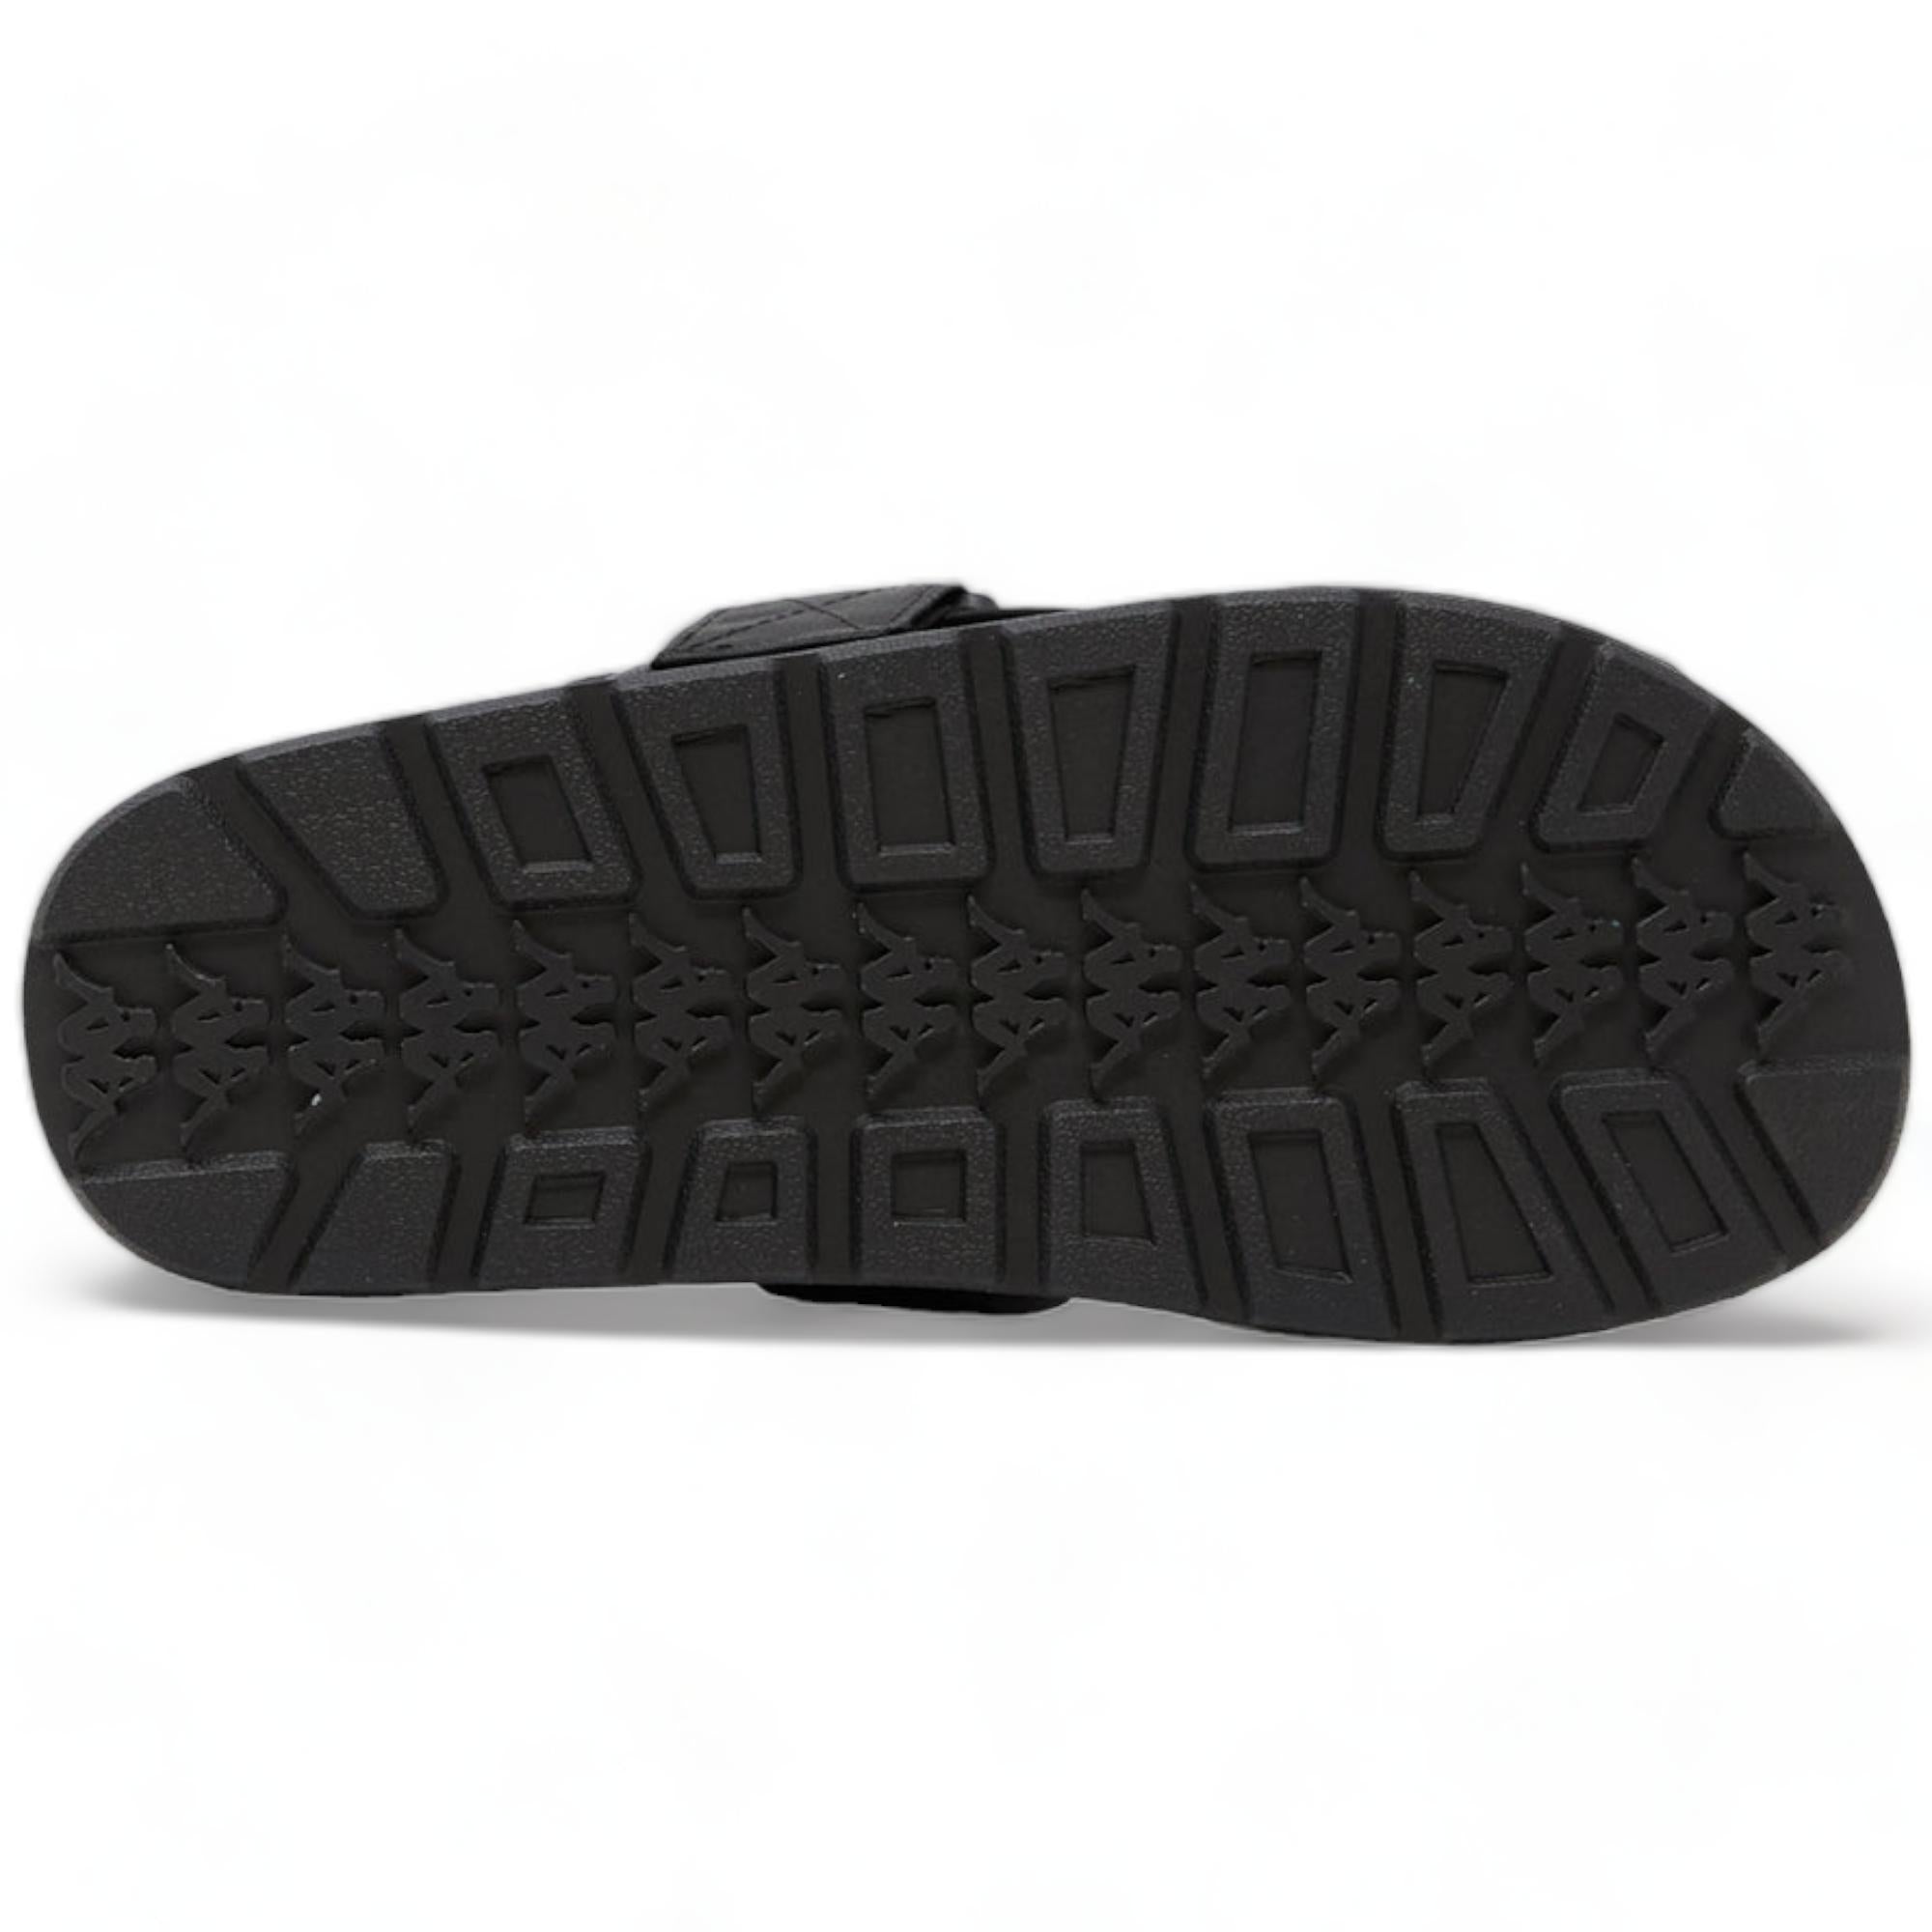 KAPPA 222 BANDA 1 SANDALS SLIDES - BLACK WHITE BLACK-Men-Footwear-Sandals & Slides-Kappa- Nexus Clothing